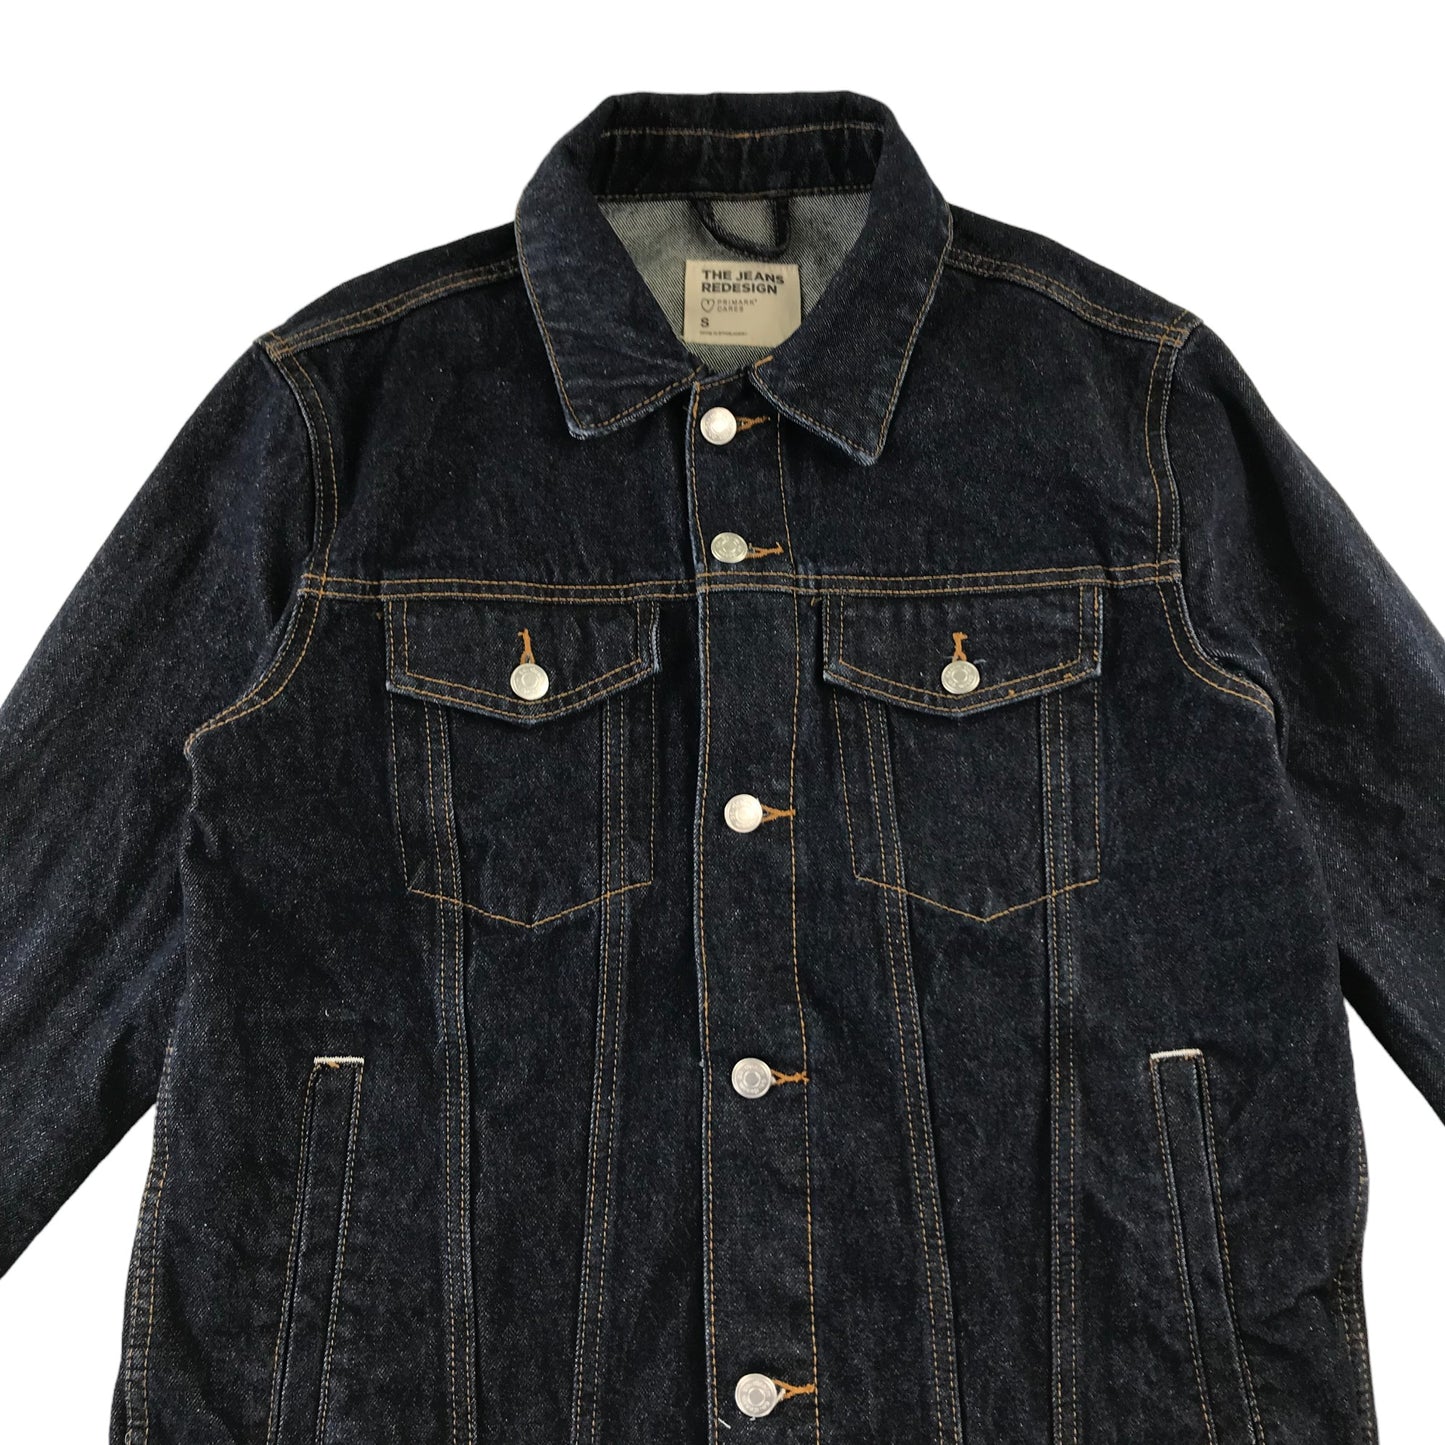 Primark denim jacket size S women dark blue button up cotton